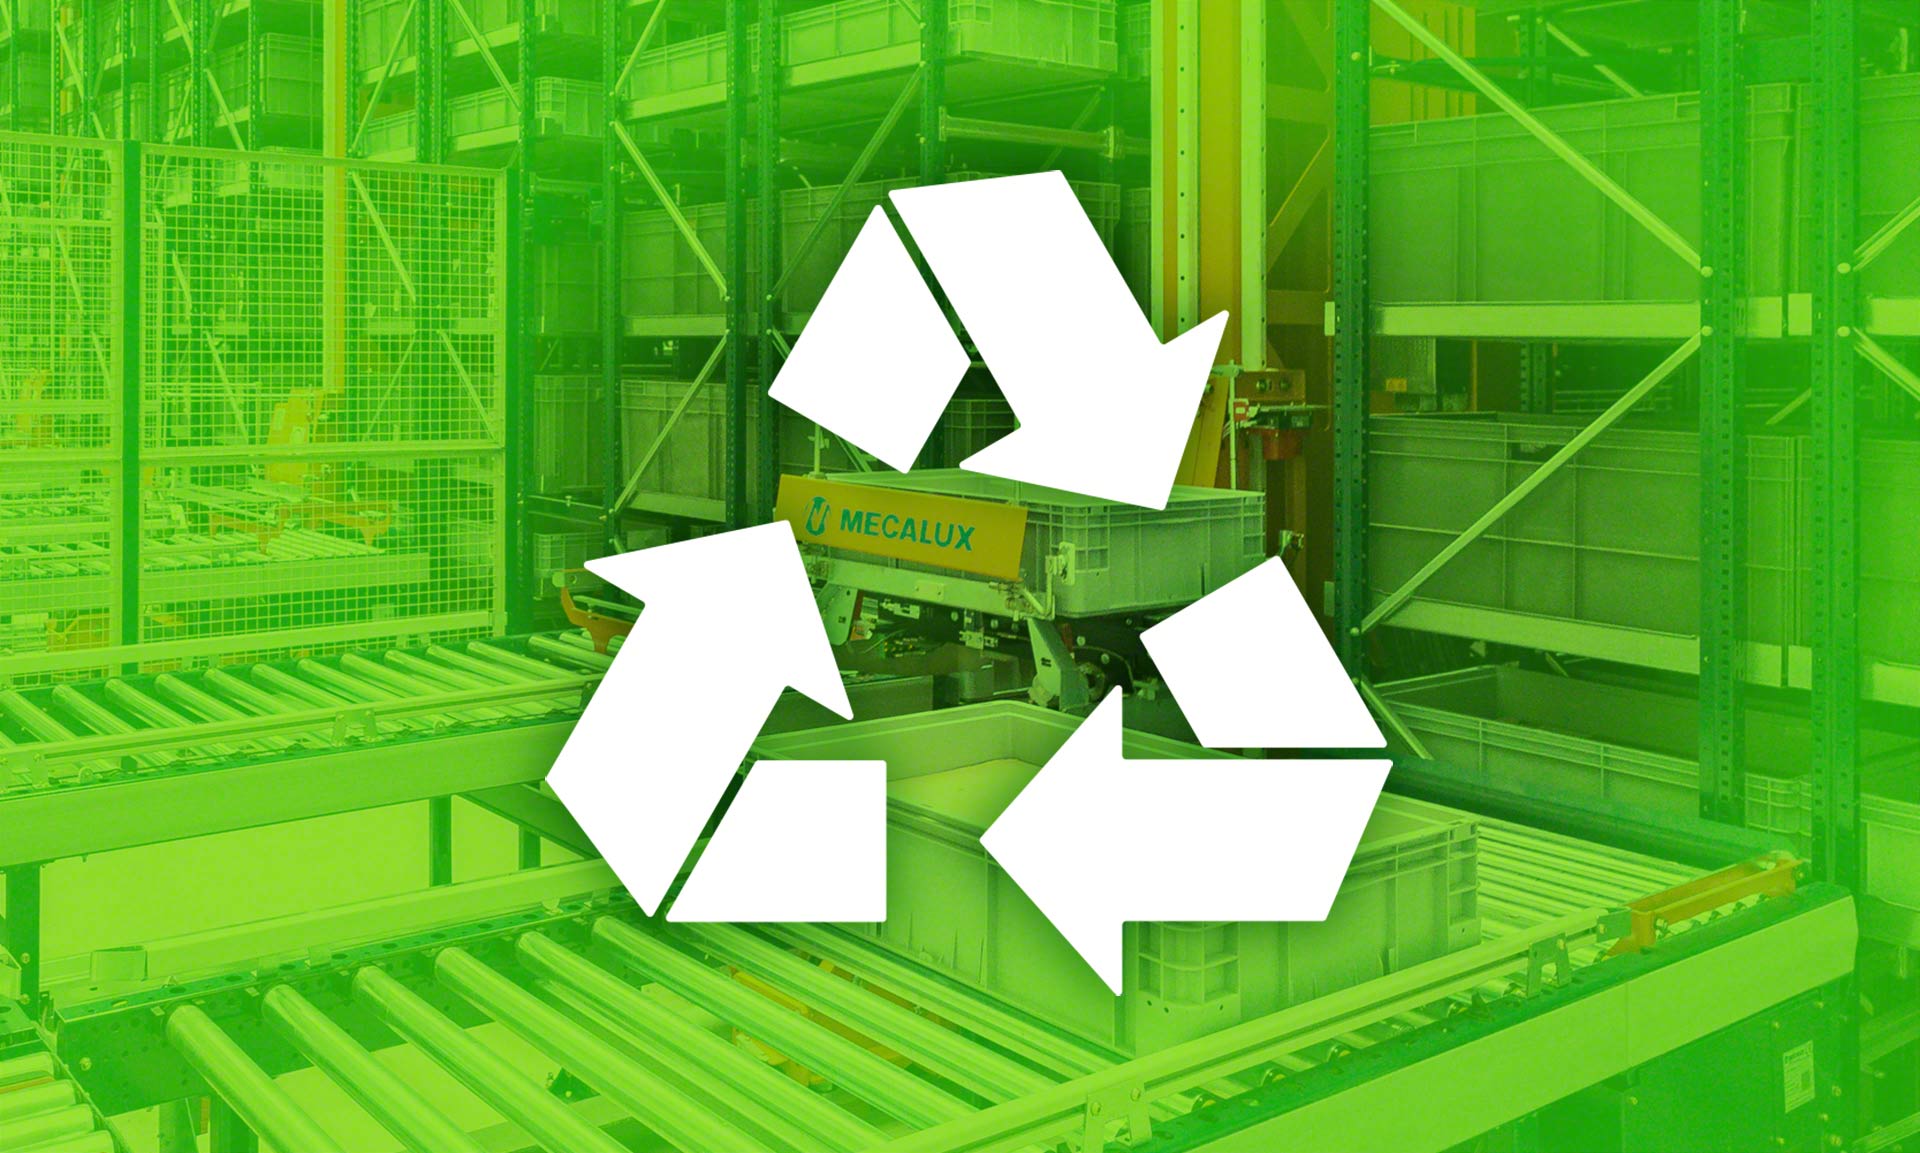 La logística sostenible busca reducir el impacto medioambiental de la cadena de suministro